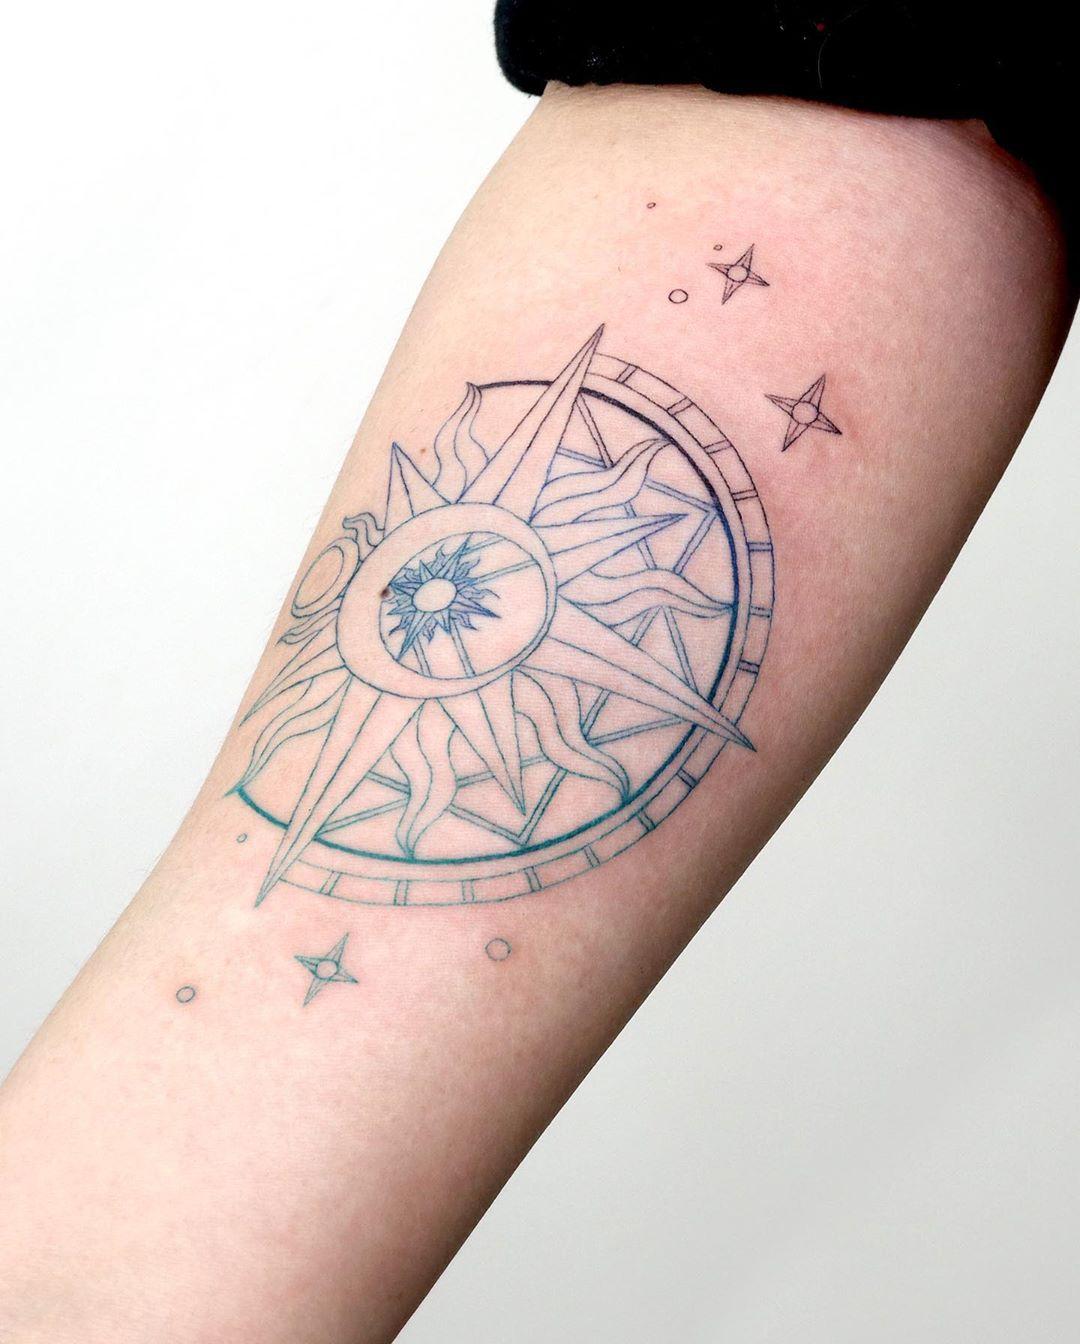 Clow card️ tattoo by @tattooist_sigak